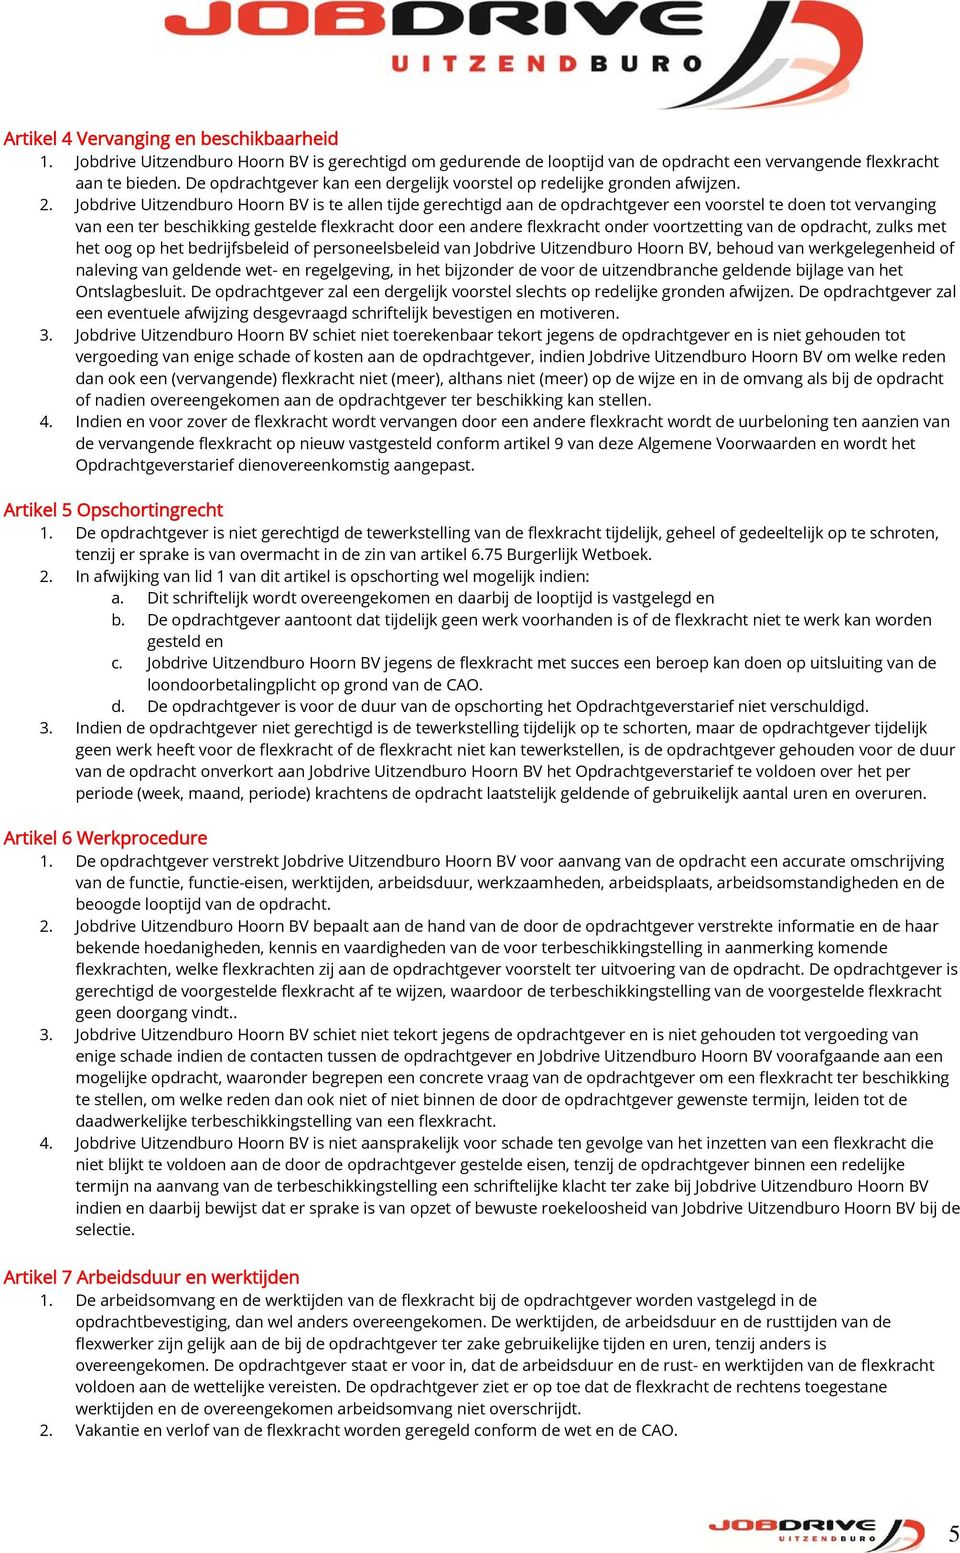 Jobdrive Uitzendburo Hoorn BV is te allen tijde gerechtigd aan de opdrachtgever een voorstel te doen tot vervanging van een ter beschikking gestelde flexkracht door een andere flexkracht onder